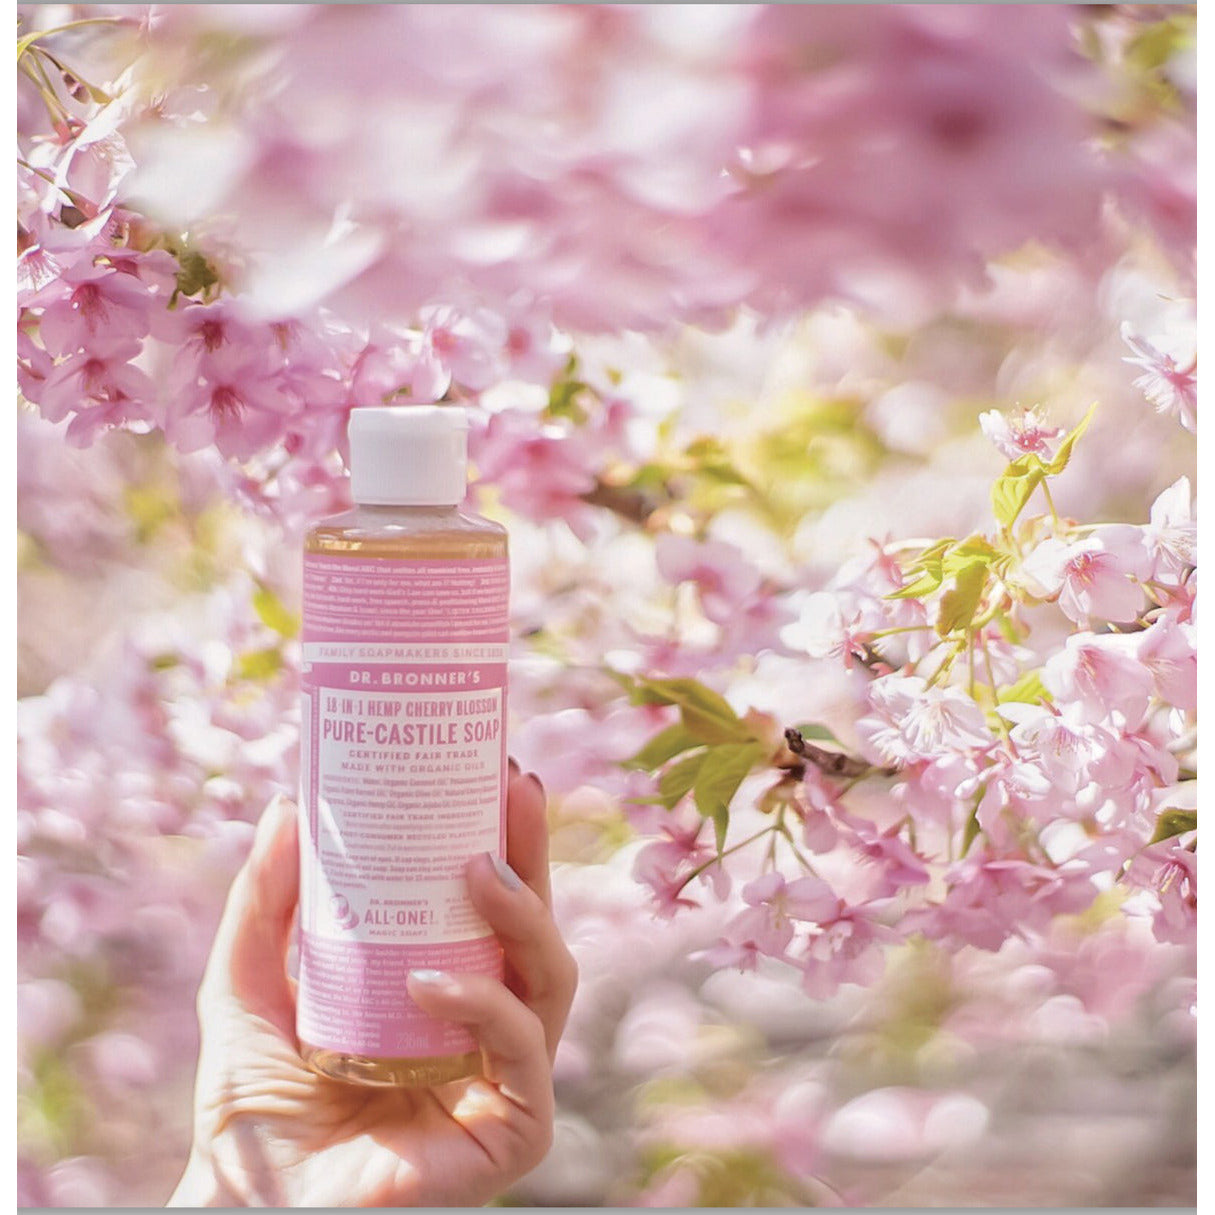 Dr Bronner's Castille Soap Liquid Soap 18-In-1 Cherry Blossom